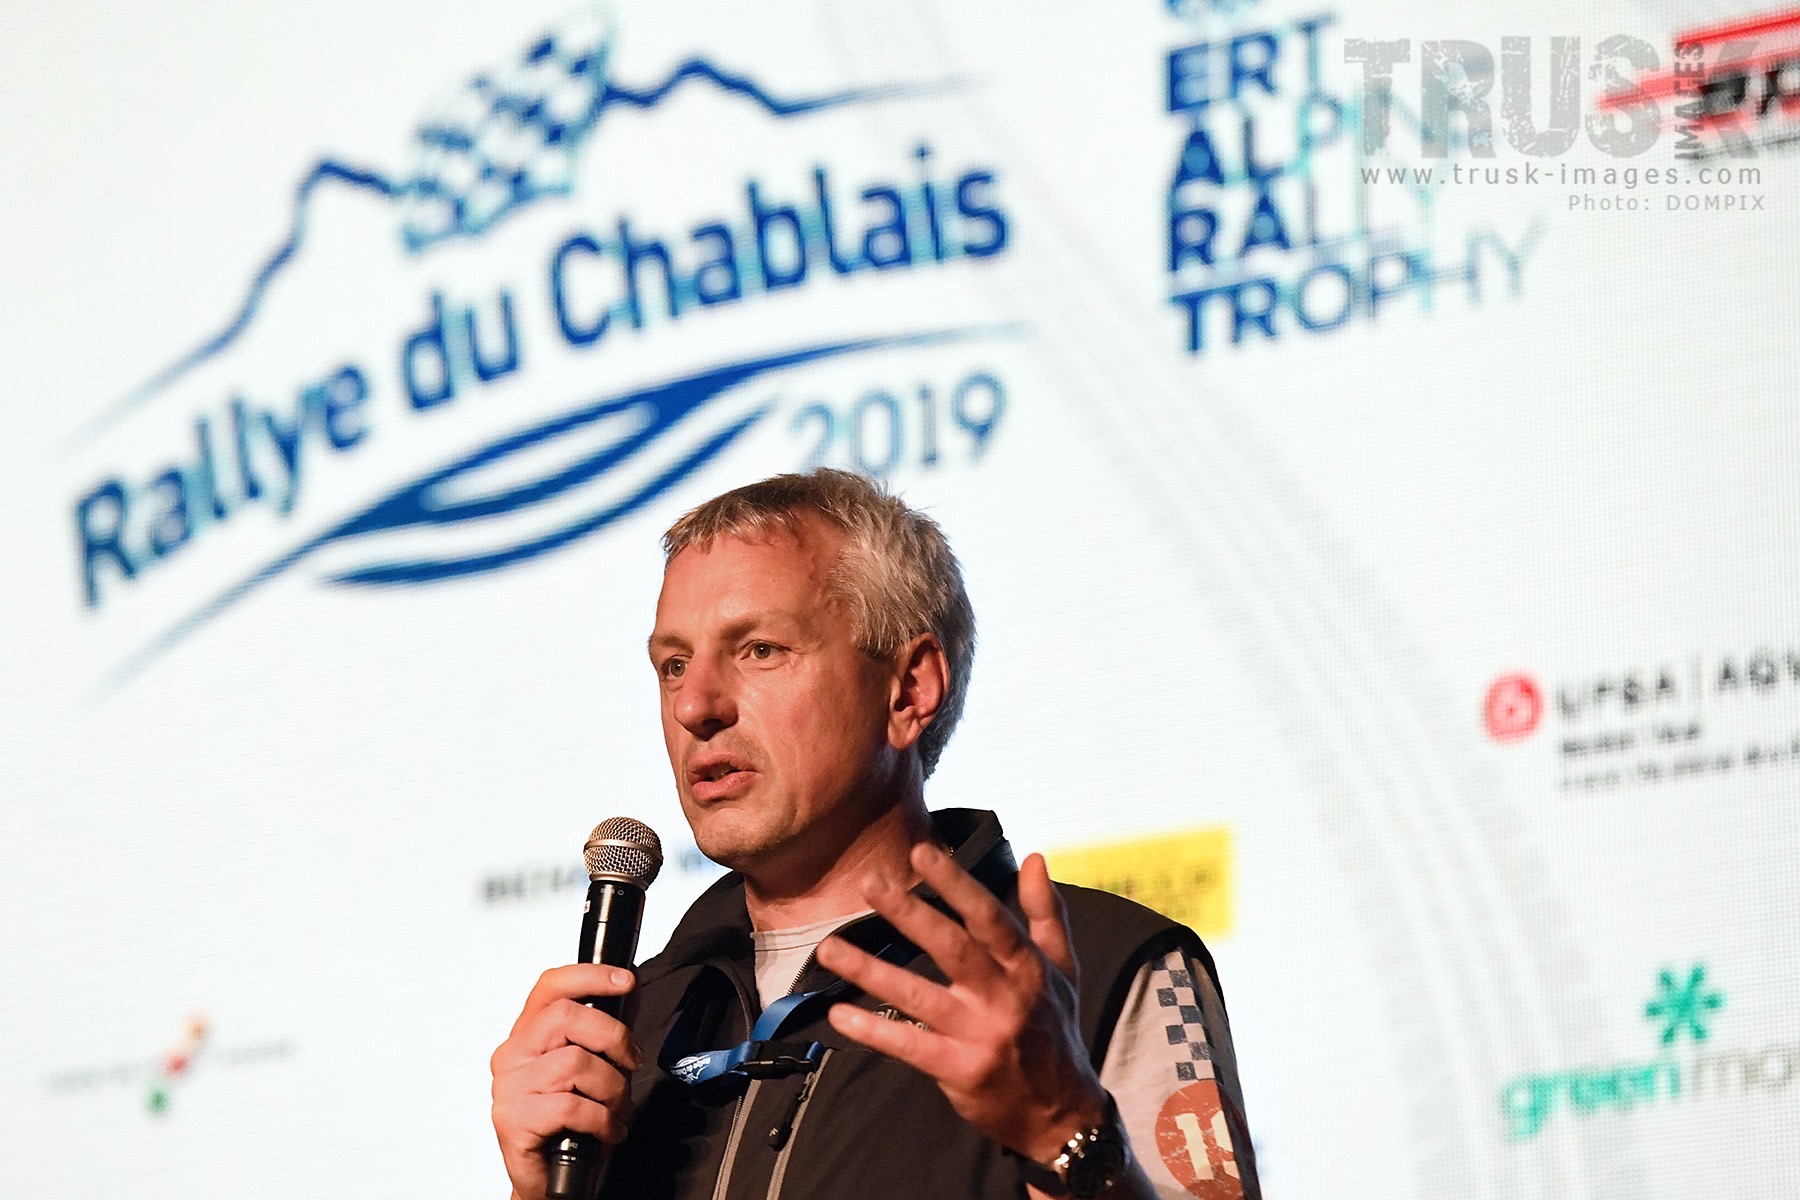 Entretien avec Eric Jordan : Le Rallye du Chablais aura-t-il lieu ?